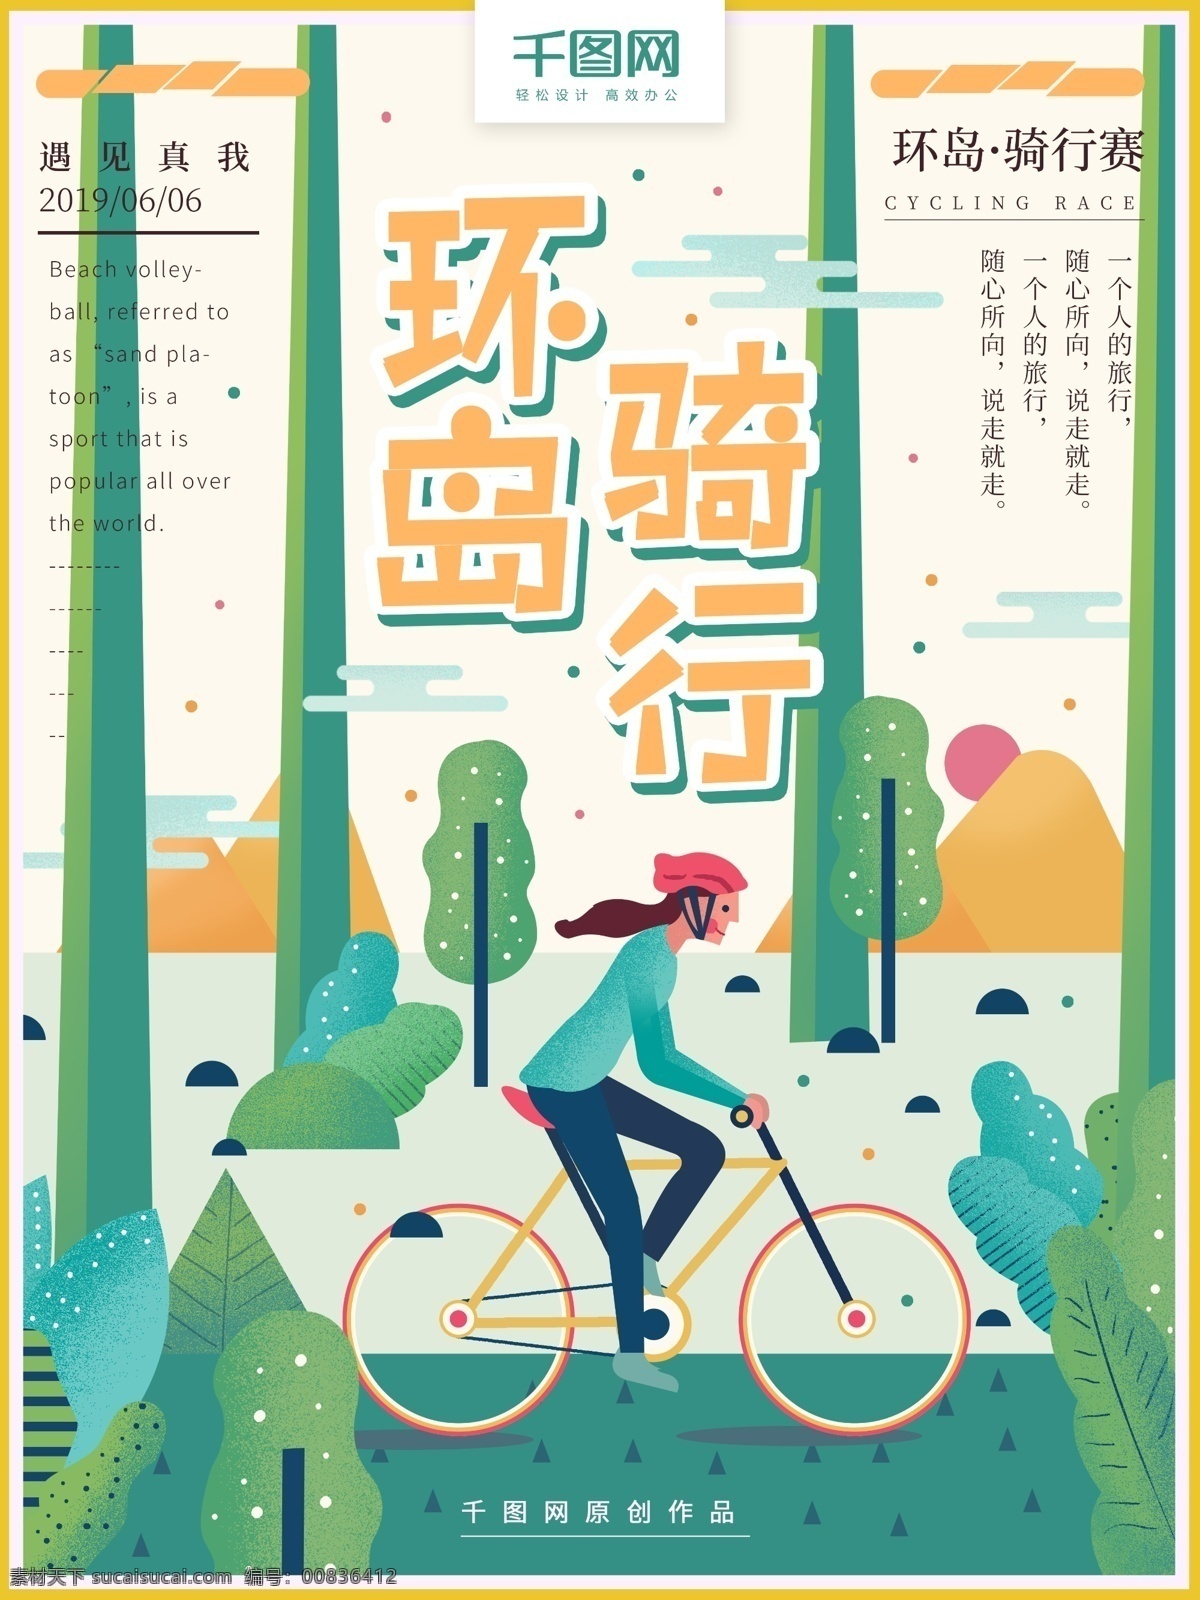 原创 手绘 环岛 骑 行 赛 简约 运动 海报 骑行 骑车 自行车 环岛骑行 体育 扁平 小清新